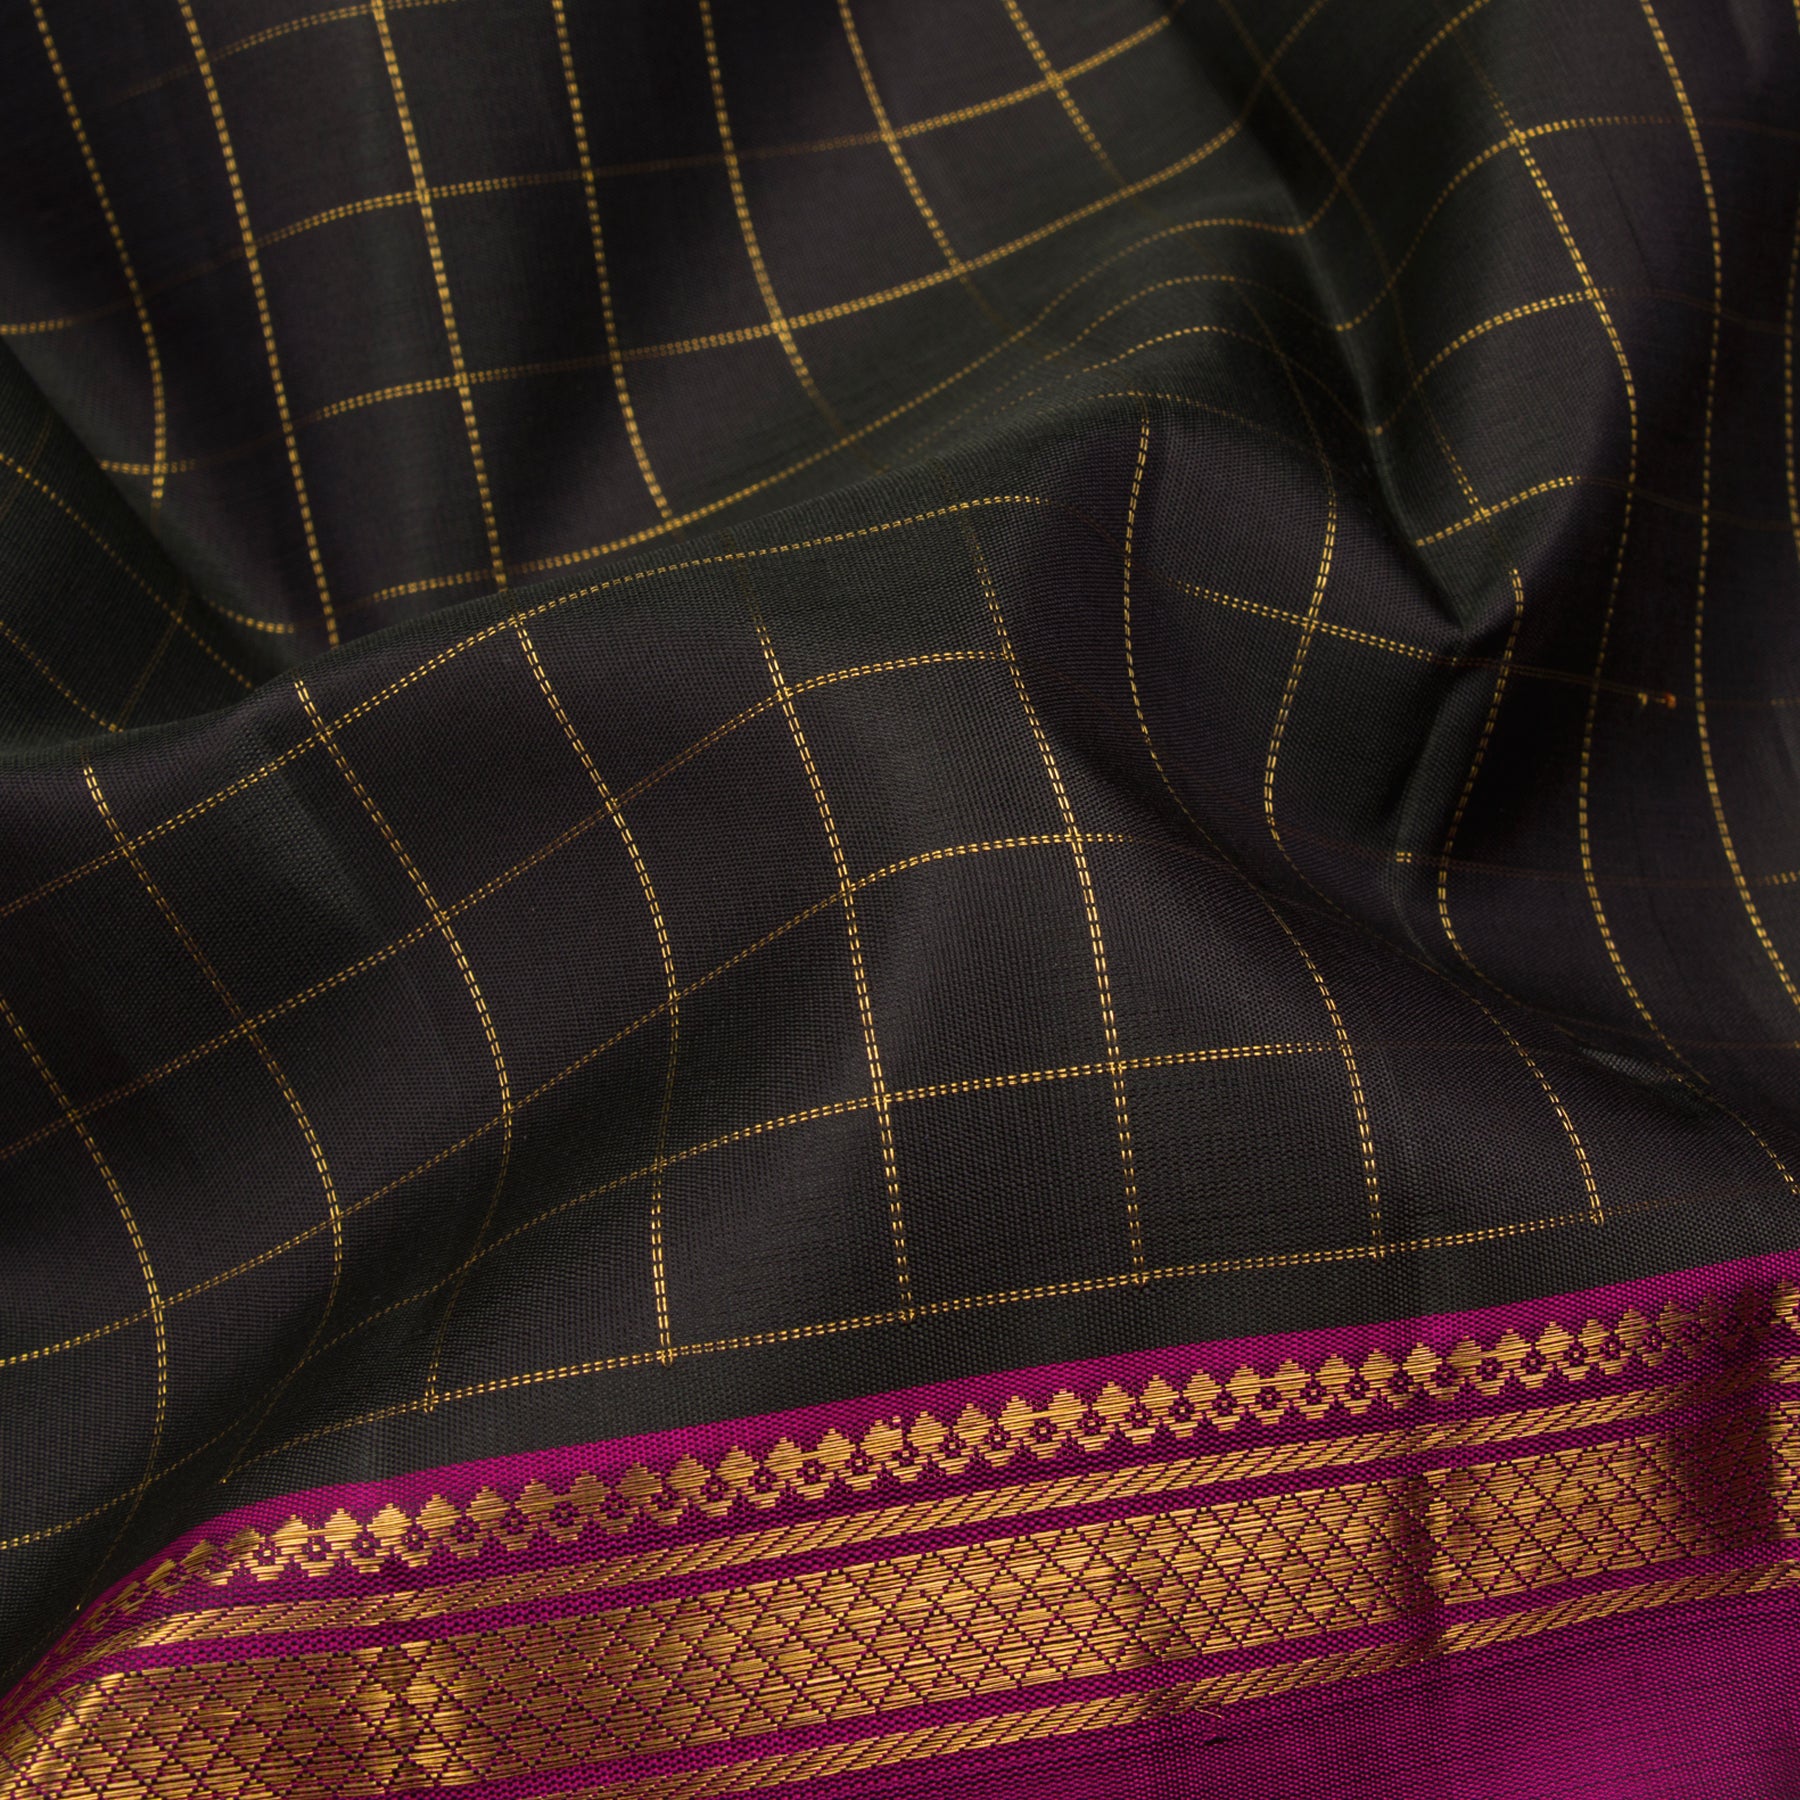 Kanakavalli Kanjivaram Silk Sari 23-595-HS001-09576 - Fabric View